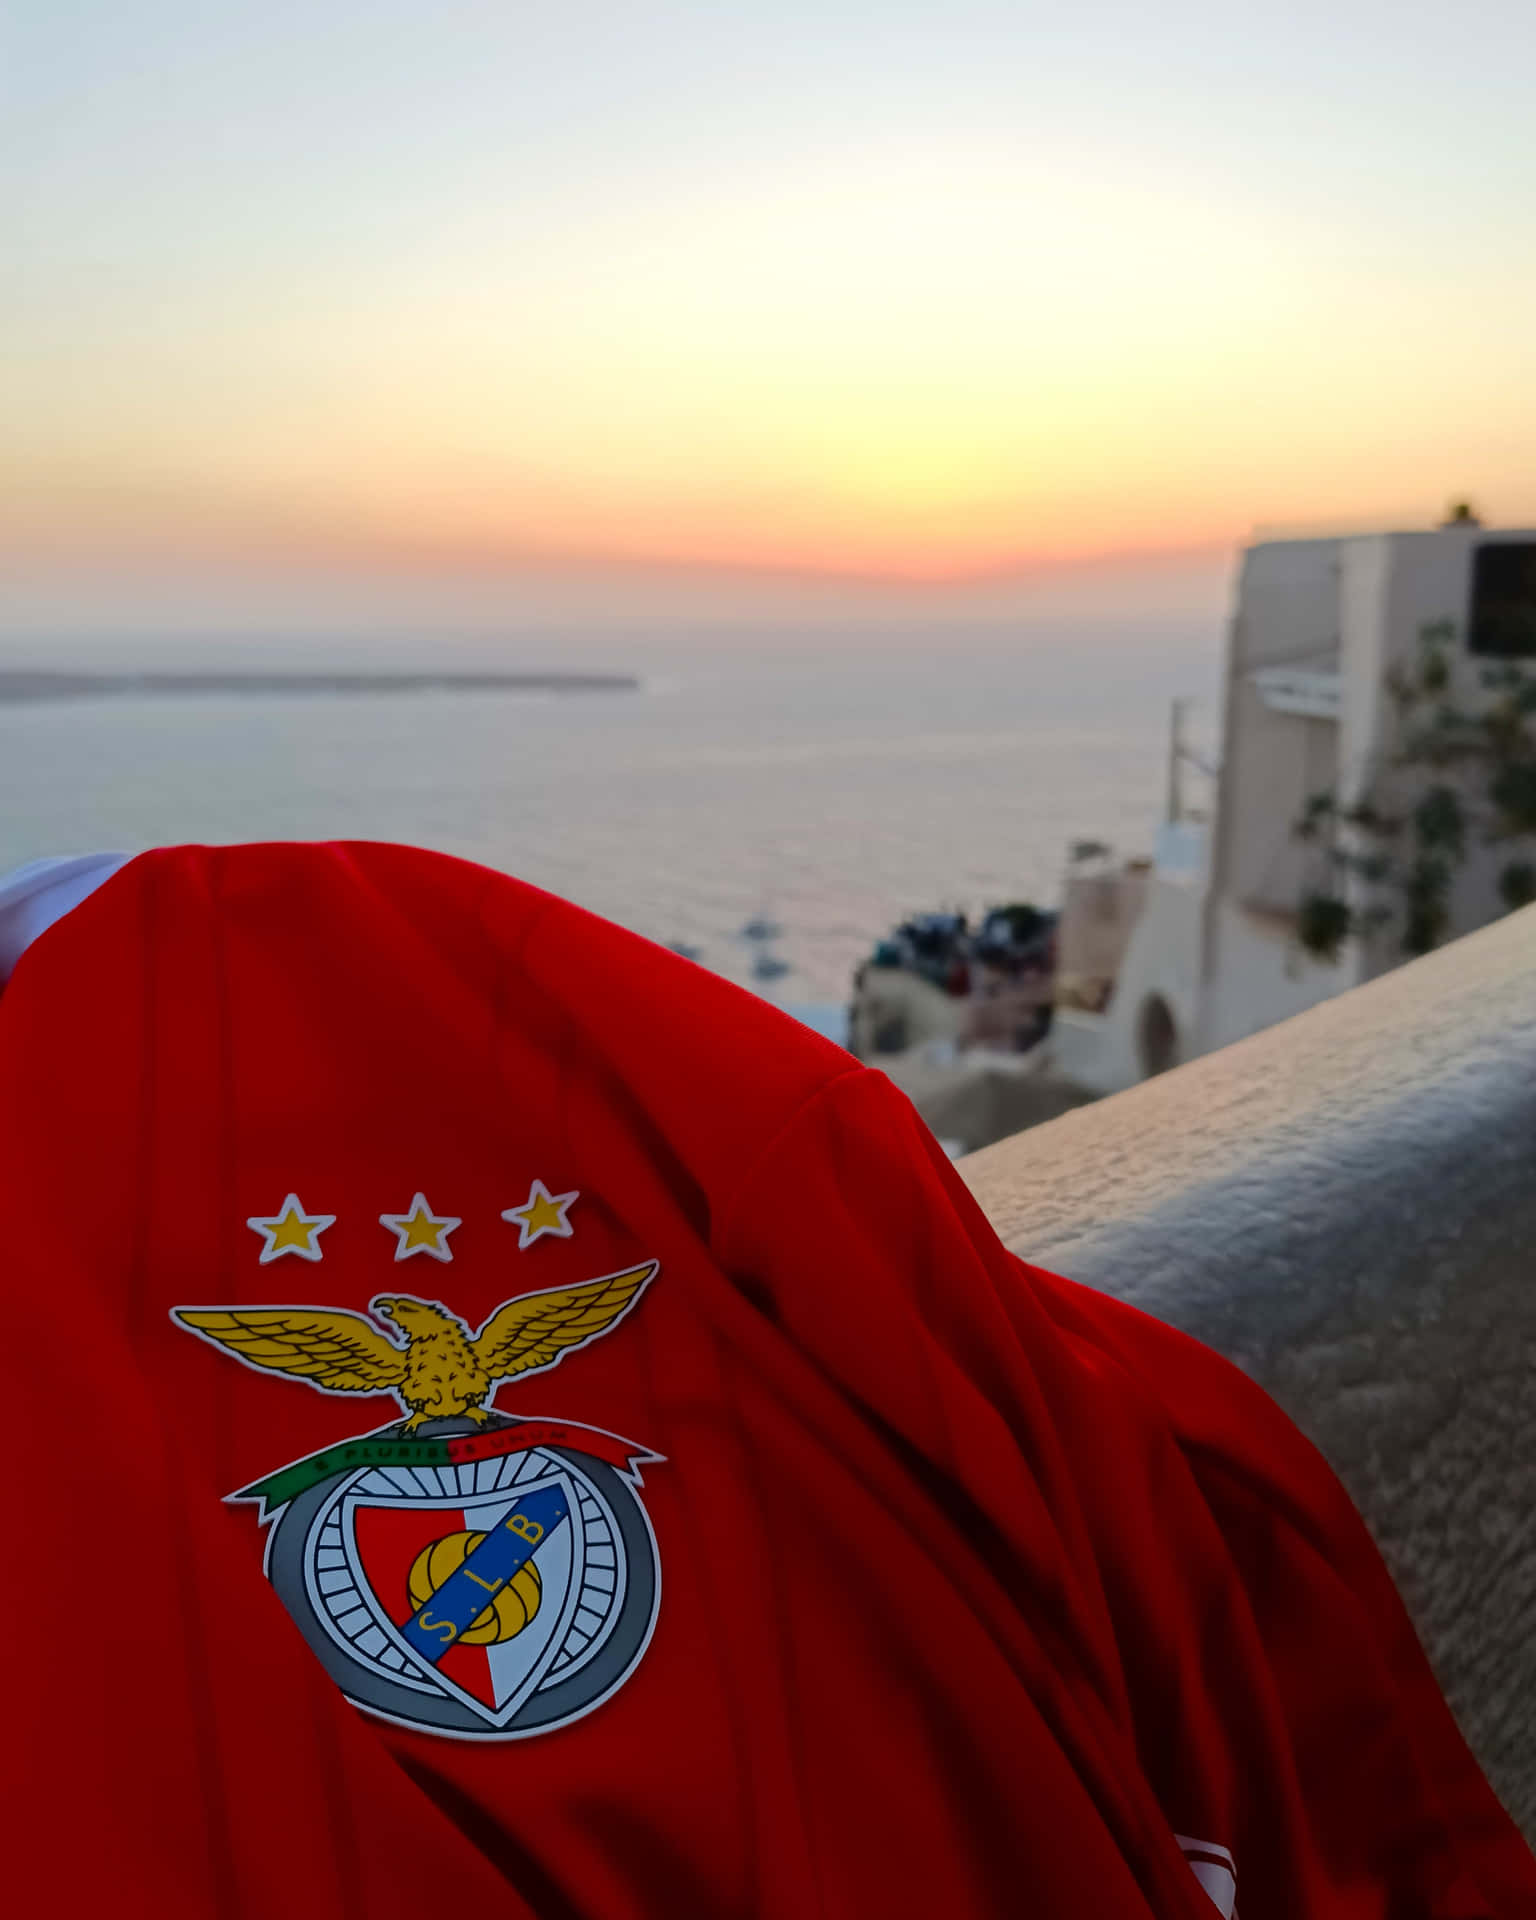 Benfica Jersey Sunset View Wallpaper